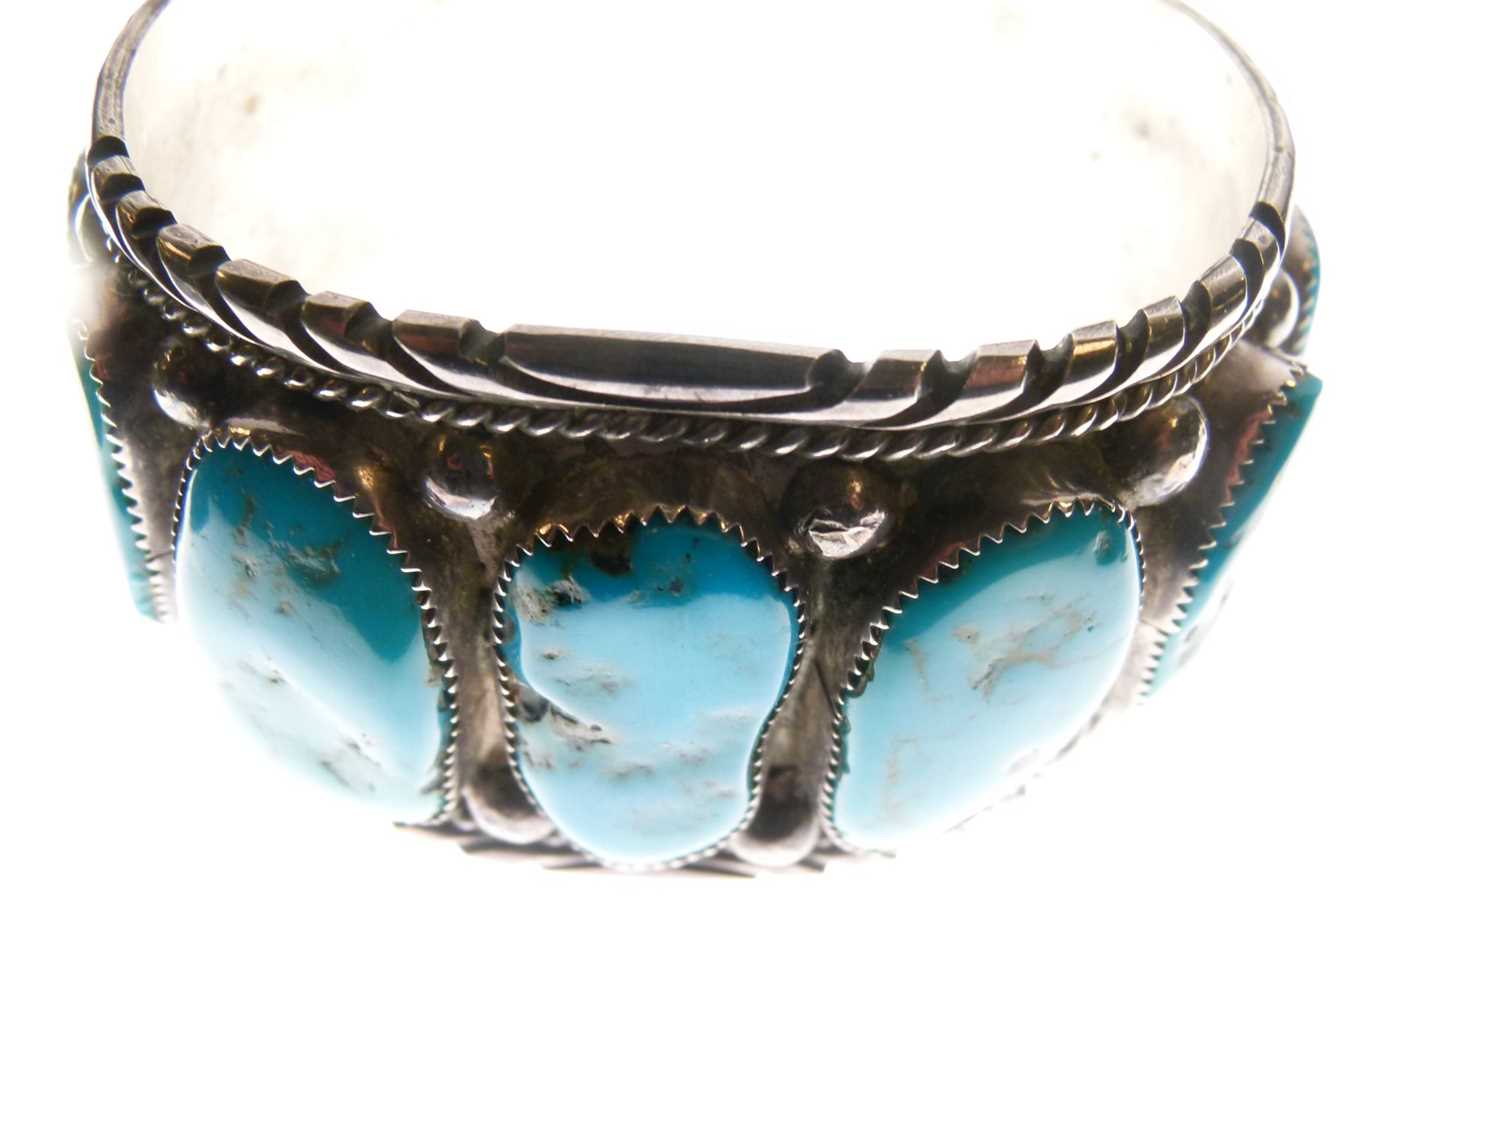 Heavy white metal bangle set irregular turquoise cabochons - Image 5 of 8